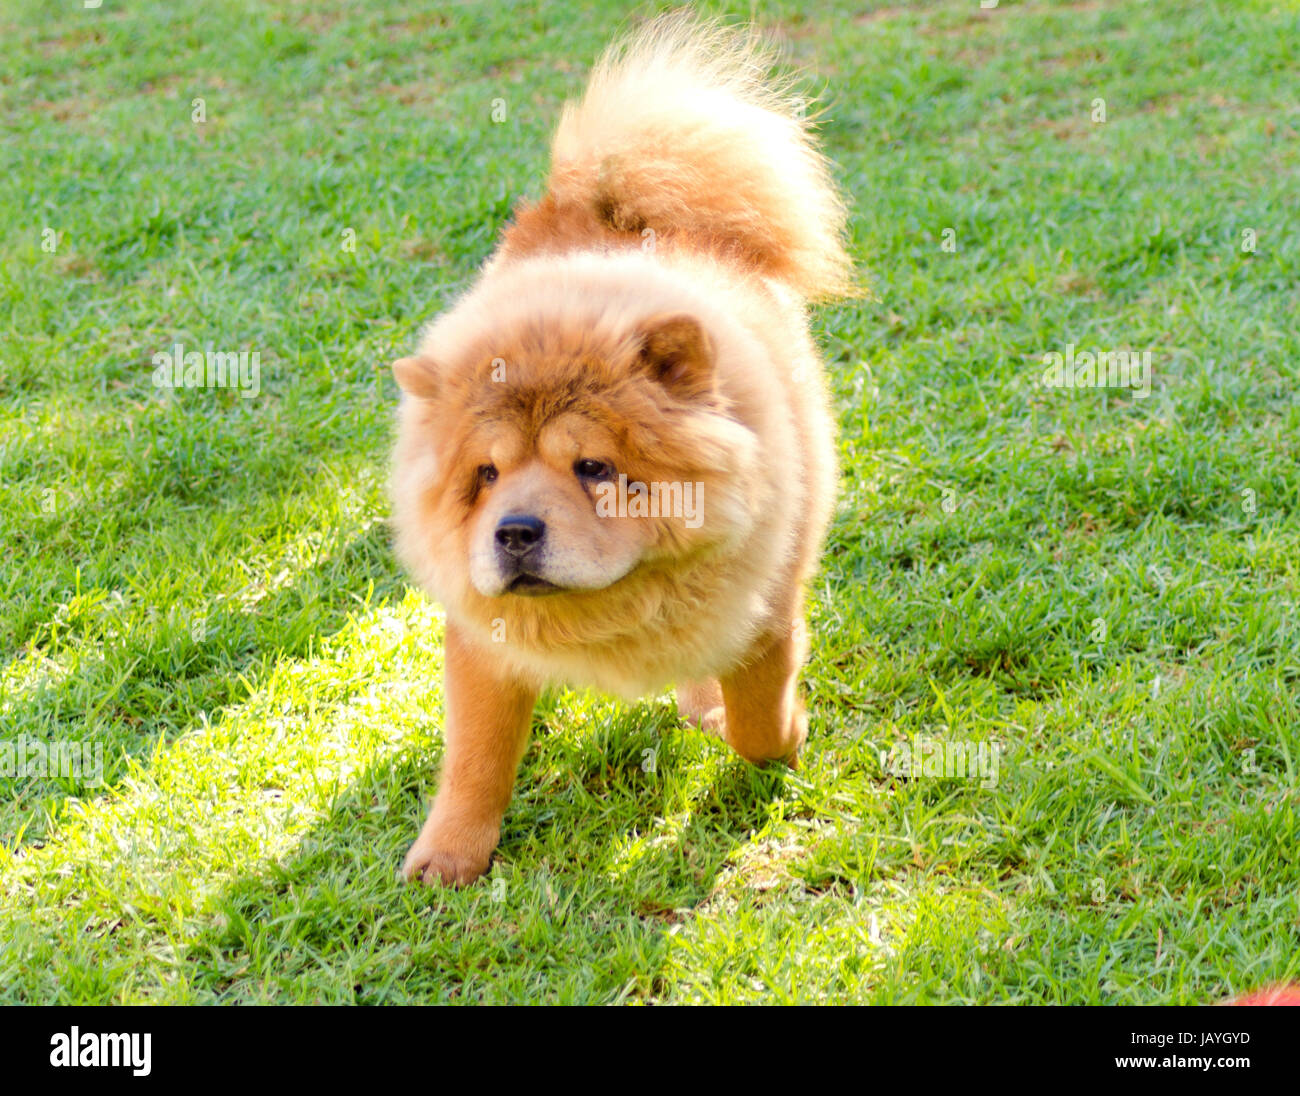 Eine junge schöne Beige Creme braun, Chow Chow Welpen Hund zu Fuß auf dem  Rasen. Die Chowdren hat eine unverwechselbare dichtere Fell, Ruff hinter  dem Kopf und um den Hals und Ringelschwanz